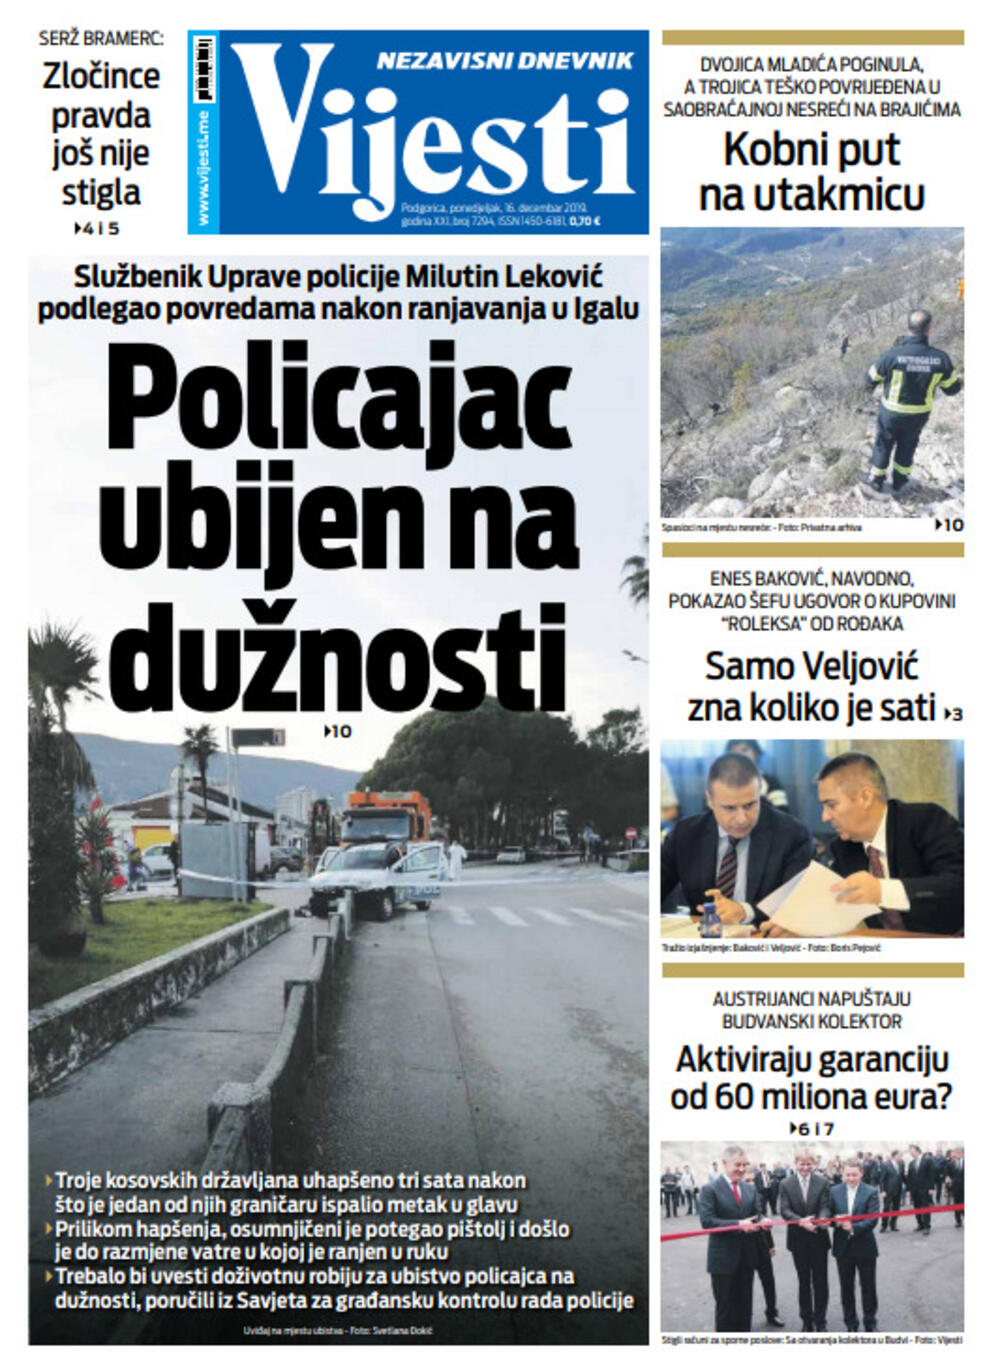 Naslovna strana "Vijesti" za 16. decembar, Foto: "Vijesti"